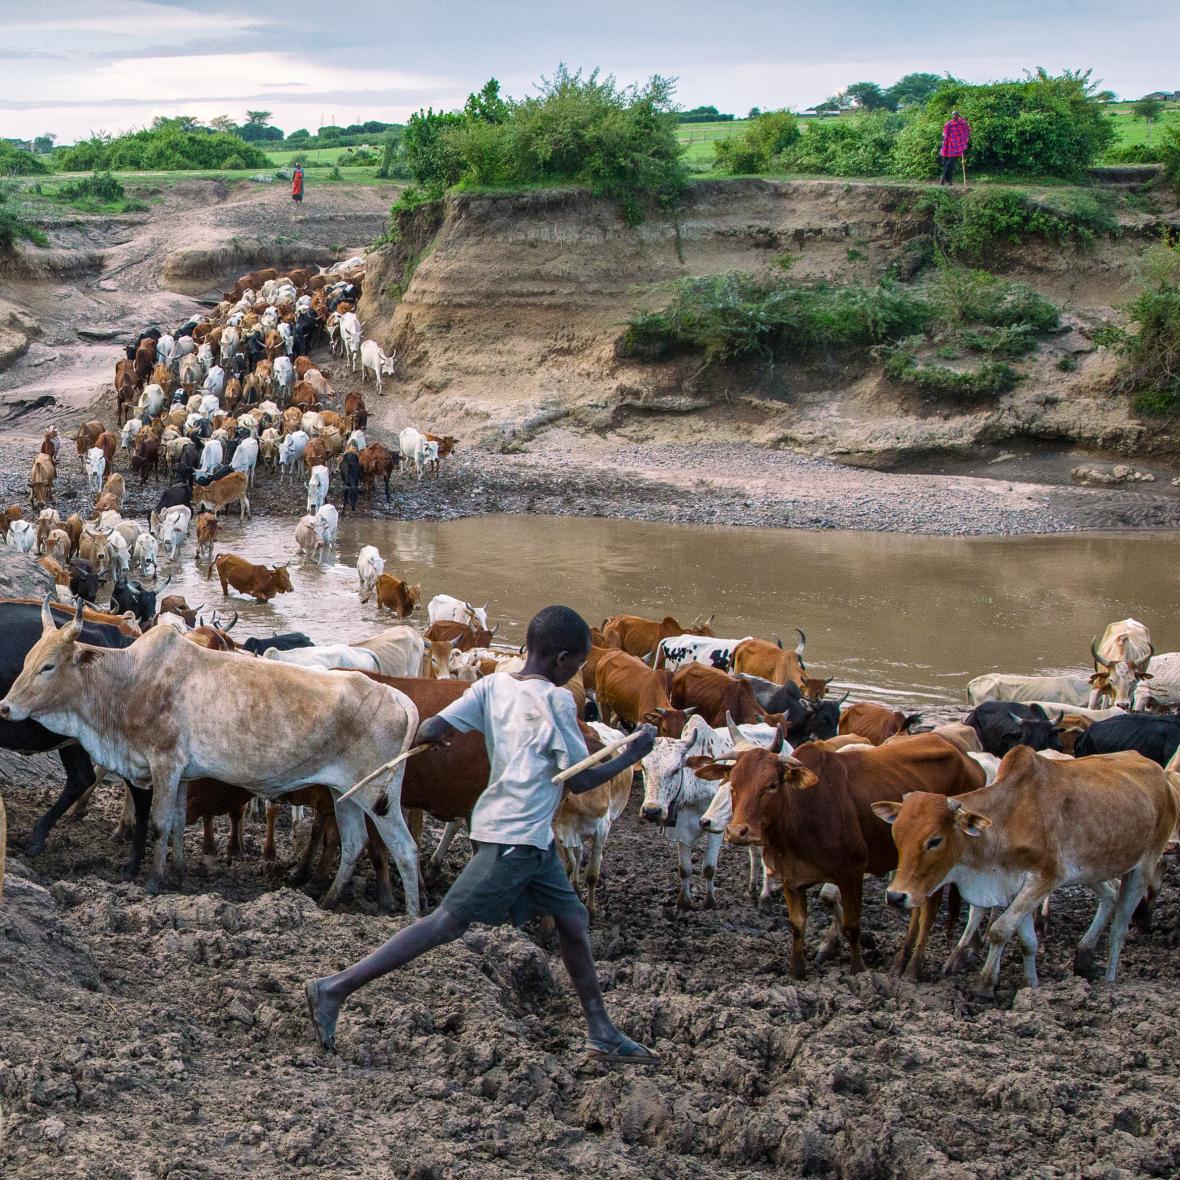 Επί γενεές, οι Μασάι της Κένυας και της Τανζανίας ακολουθούν τις εποχικές βροχές της ανατολικής Αφρικής, μετακινώντας τα κοπάδια τους από το ένα μέρος στο άλλο, δίνοντας στο γρασίδι την ευκαιρία να αναπτυχθεί ξανά. Υποφέρουν όλο και περισσότερο από την κλιματική αλλαγή, τις παραβιάσεις των ανθρωπίνων δικαιωμάτων και την έξωση στο όνομα της προστασίας